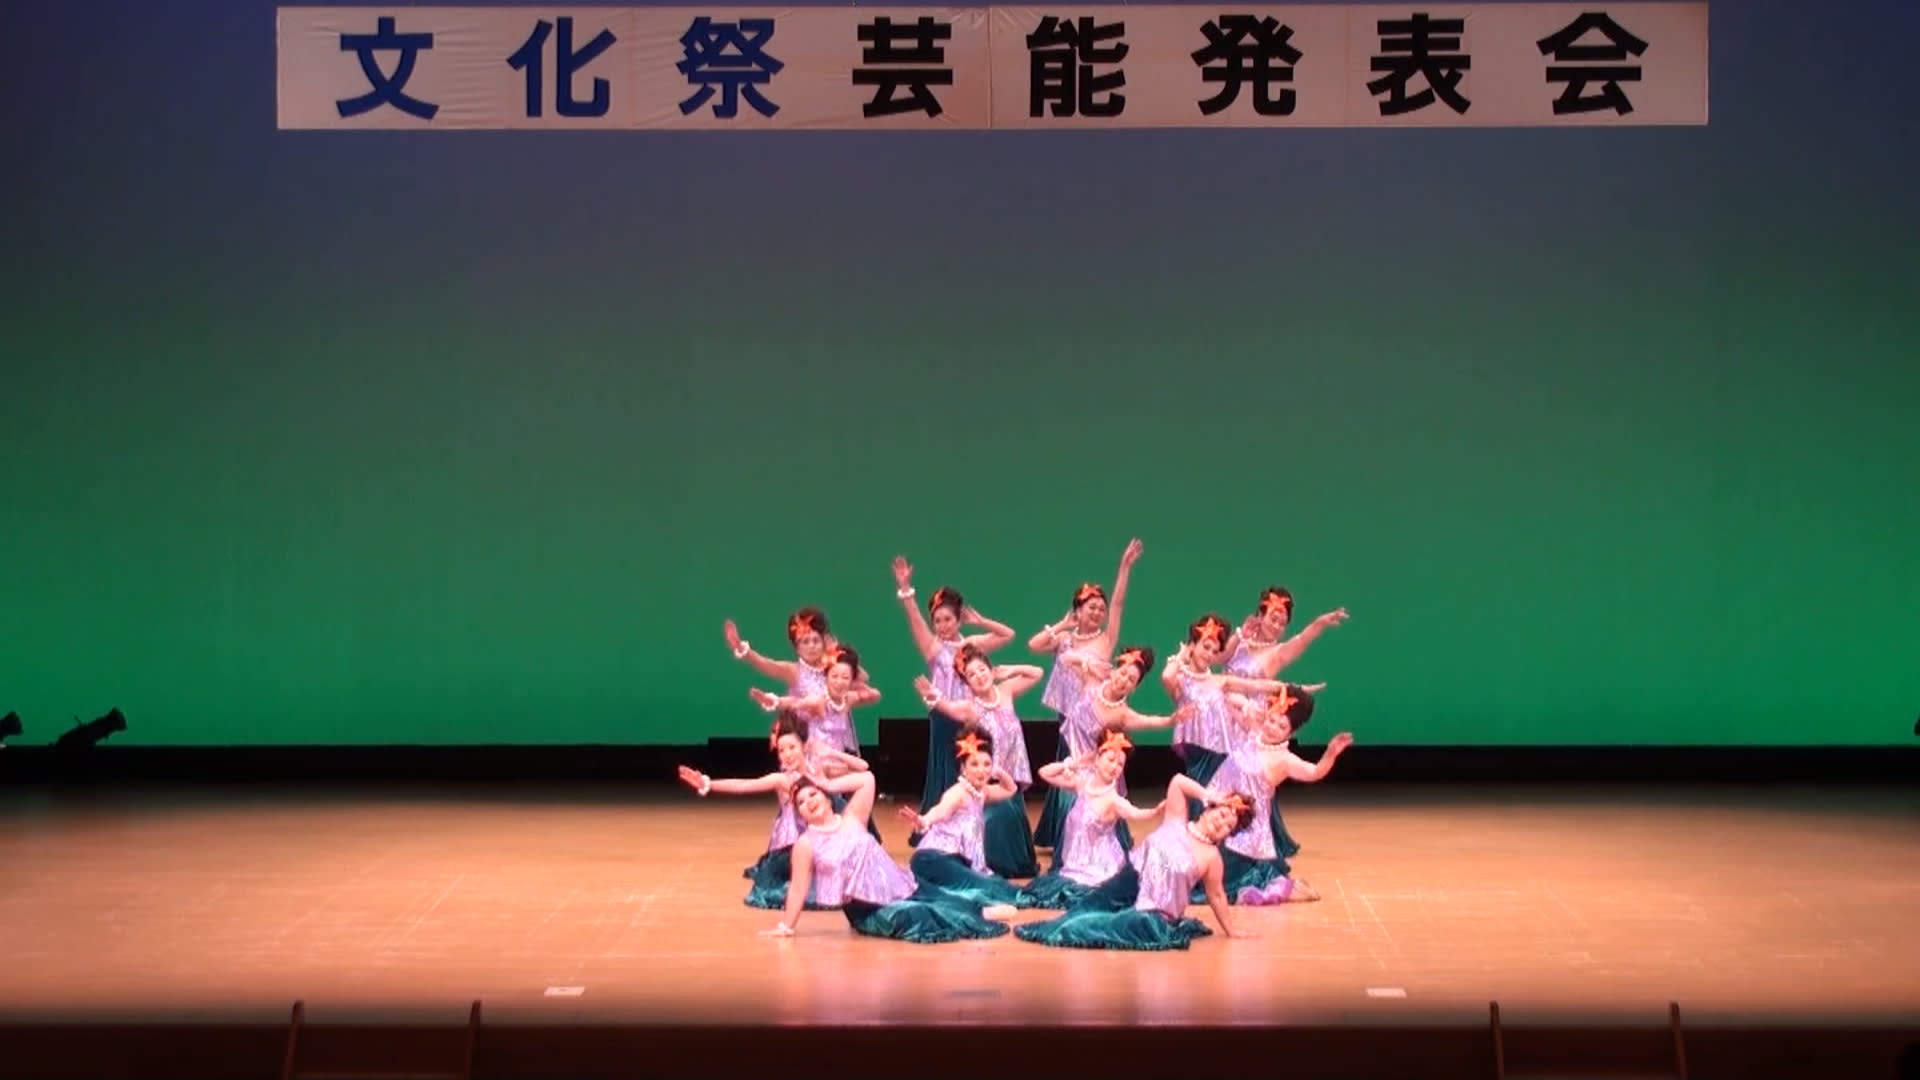 14日光市民文化祭 舞蛙堂本舗リターンズ スタジオmダンスアカデミーblog